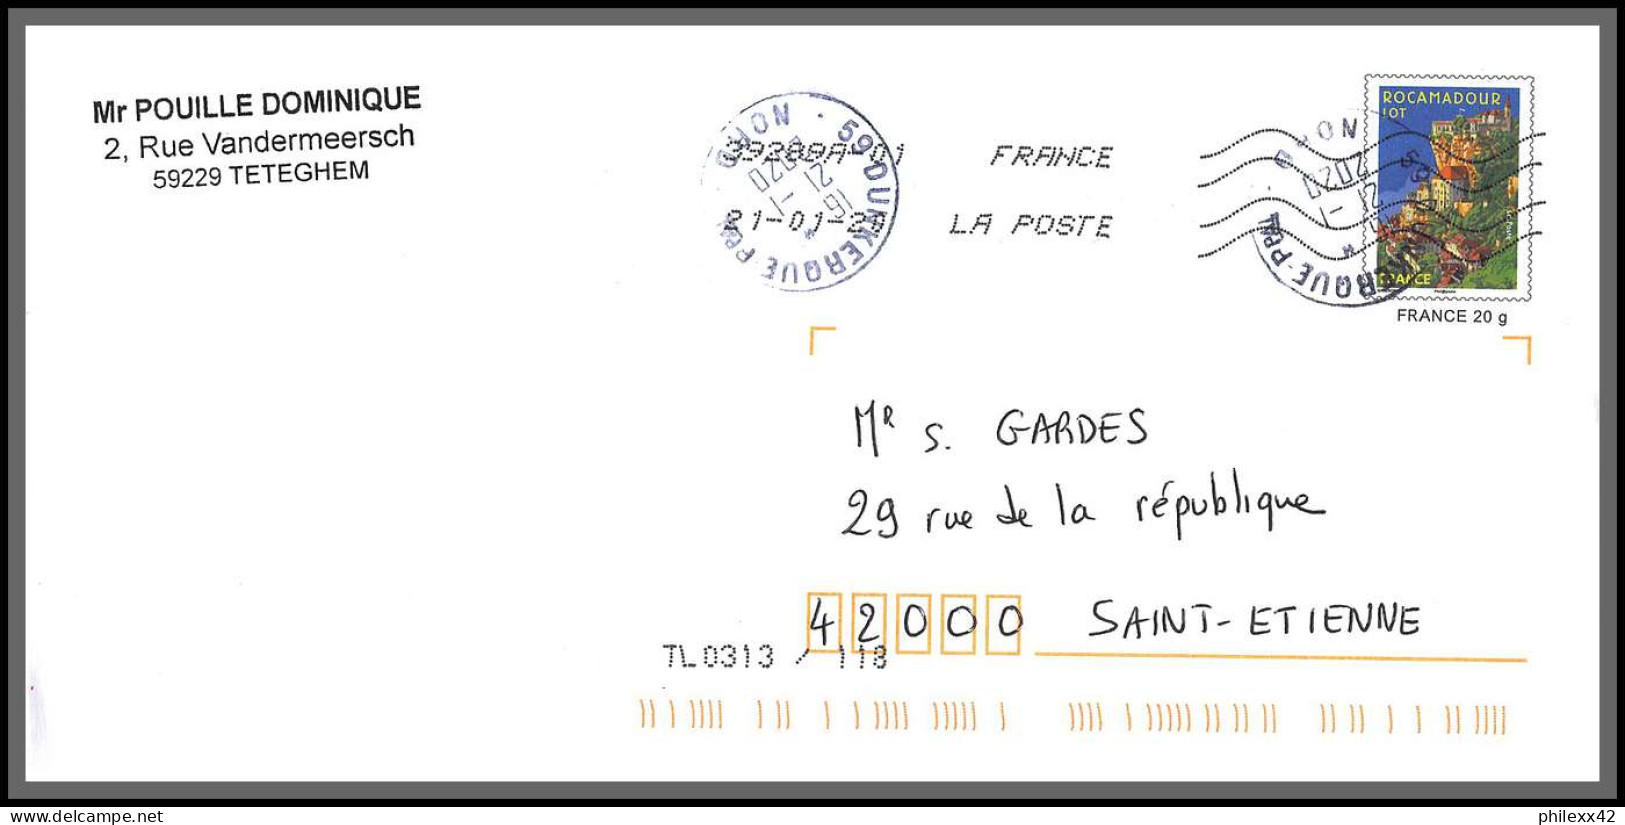 95710 - lot de 20 courriers lettres enveloppes de l'année 2020 divers affranchissements en EUROS